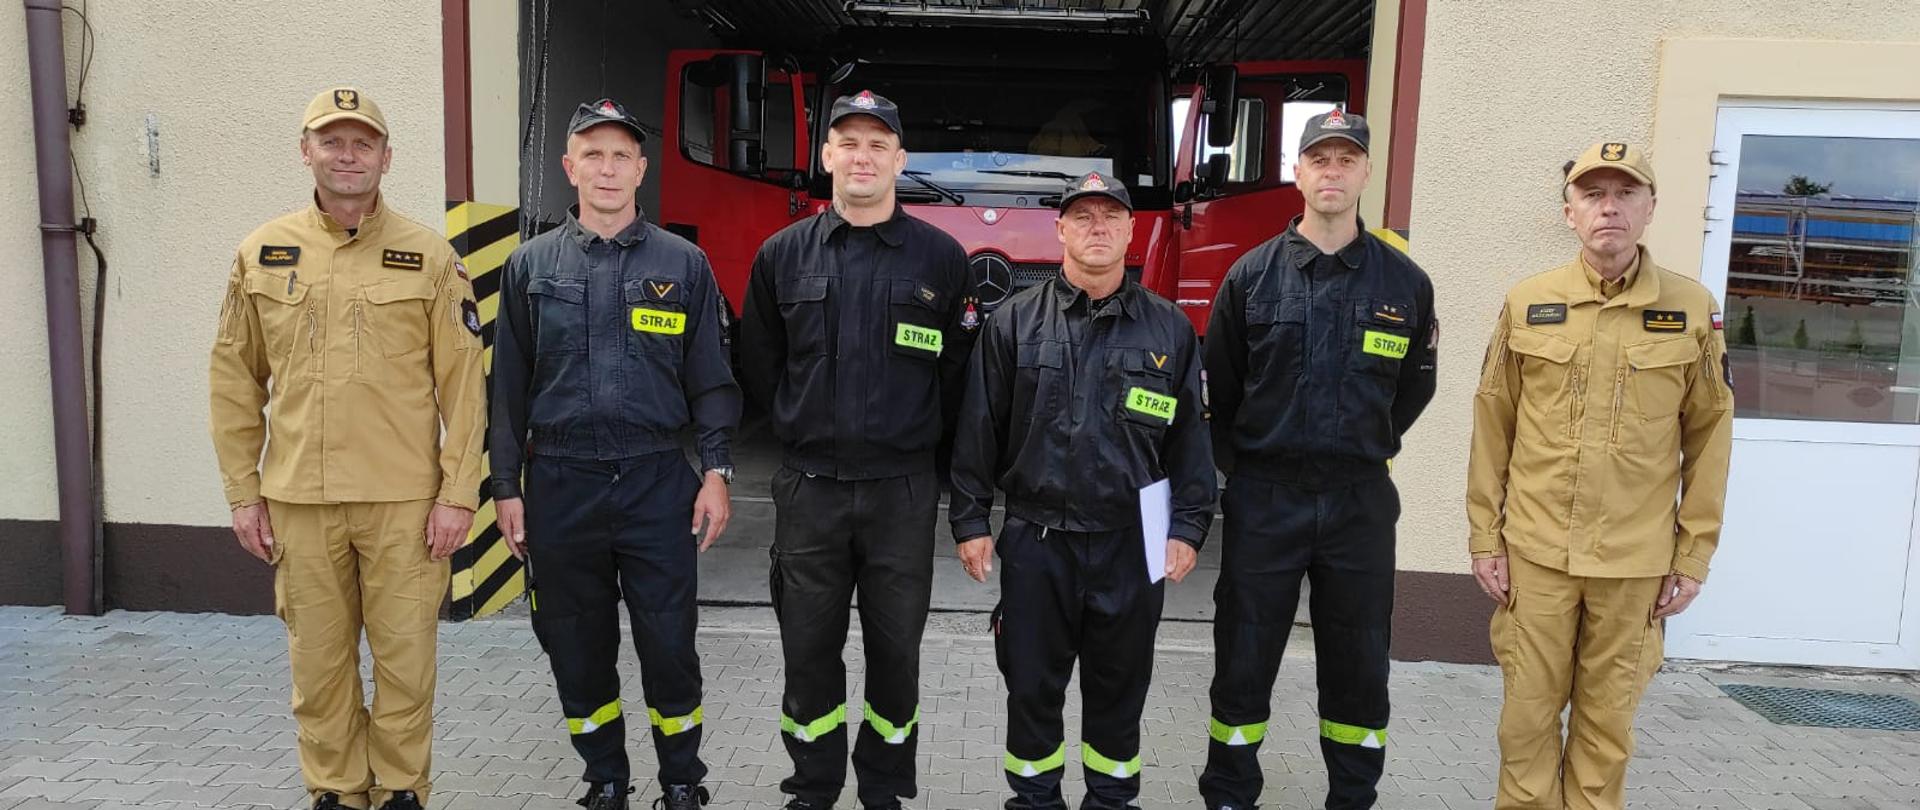 Zdjęcie przedstawia 6 strażaków stojących przed brama garażową pozując do zdjęcia. Za nimi pojazd pożarniczy w garażu.